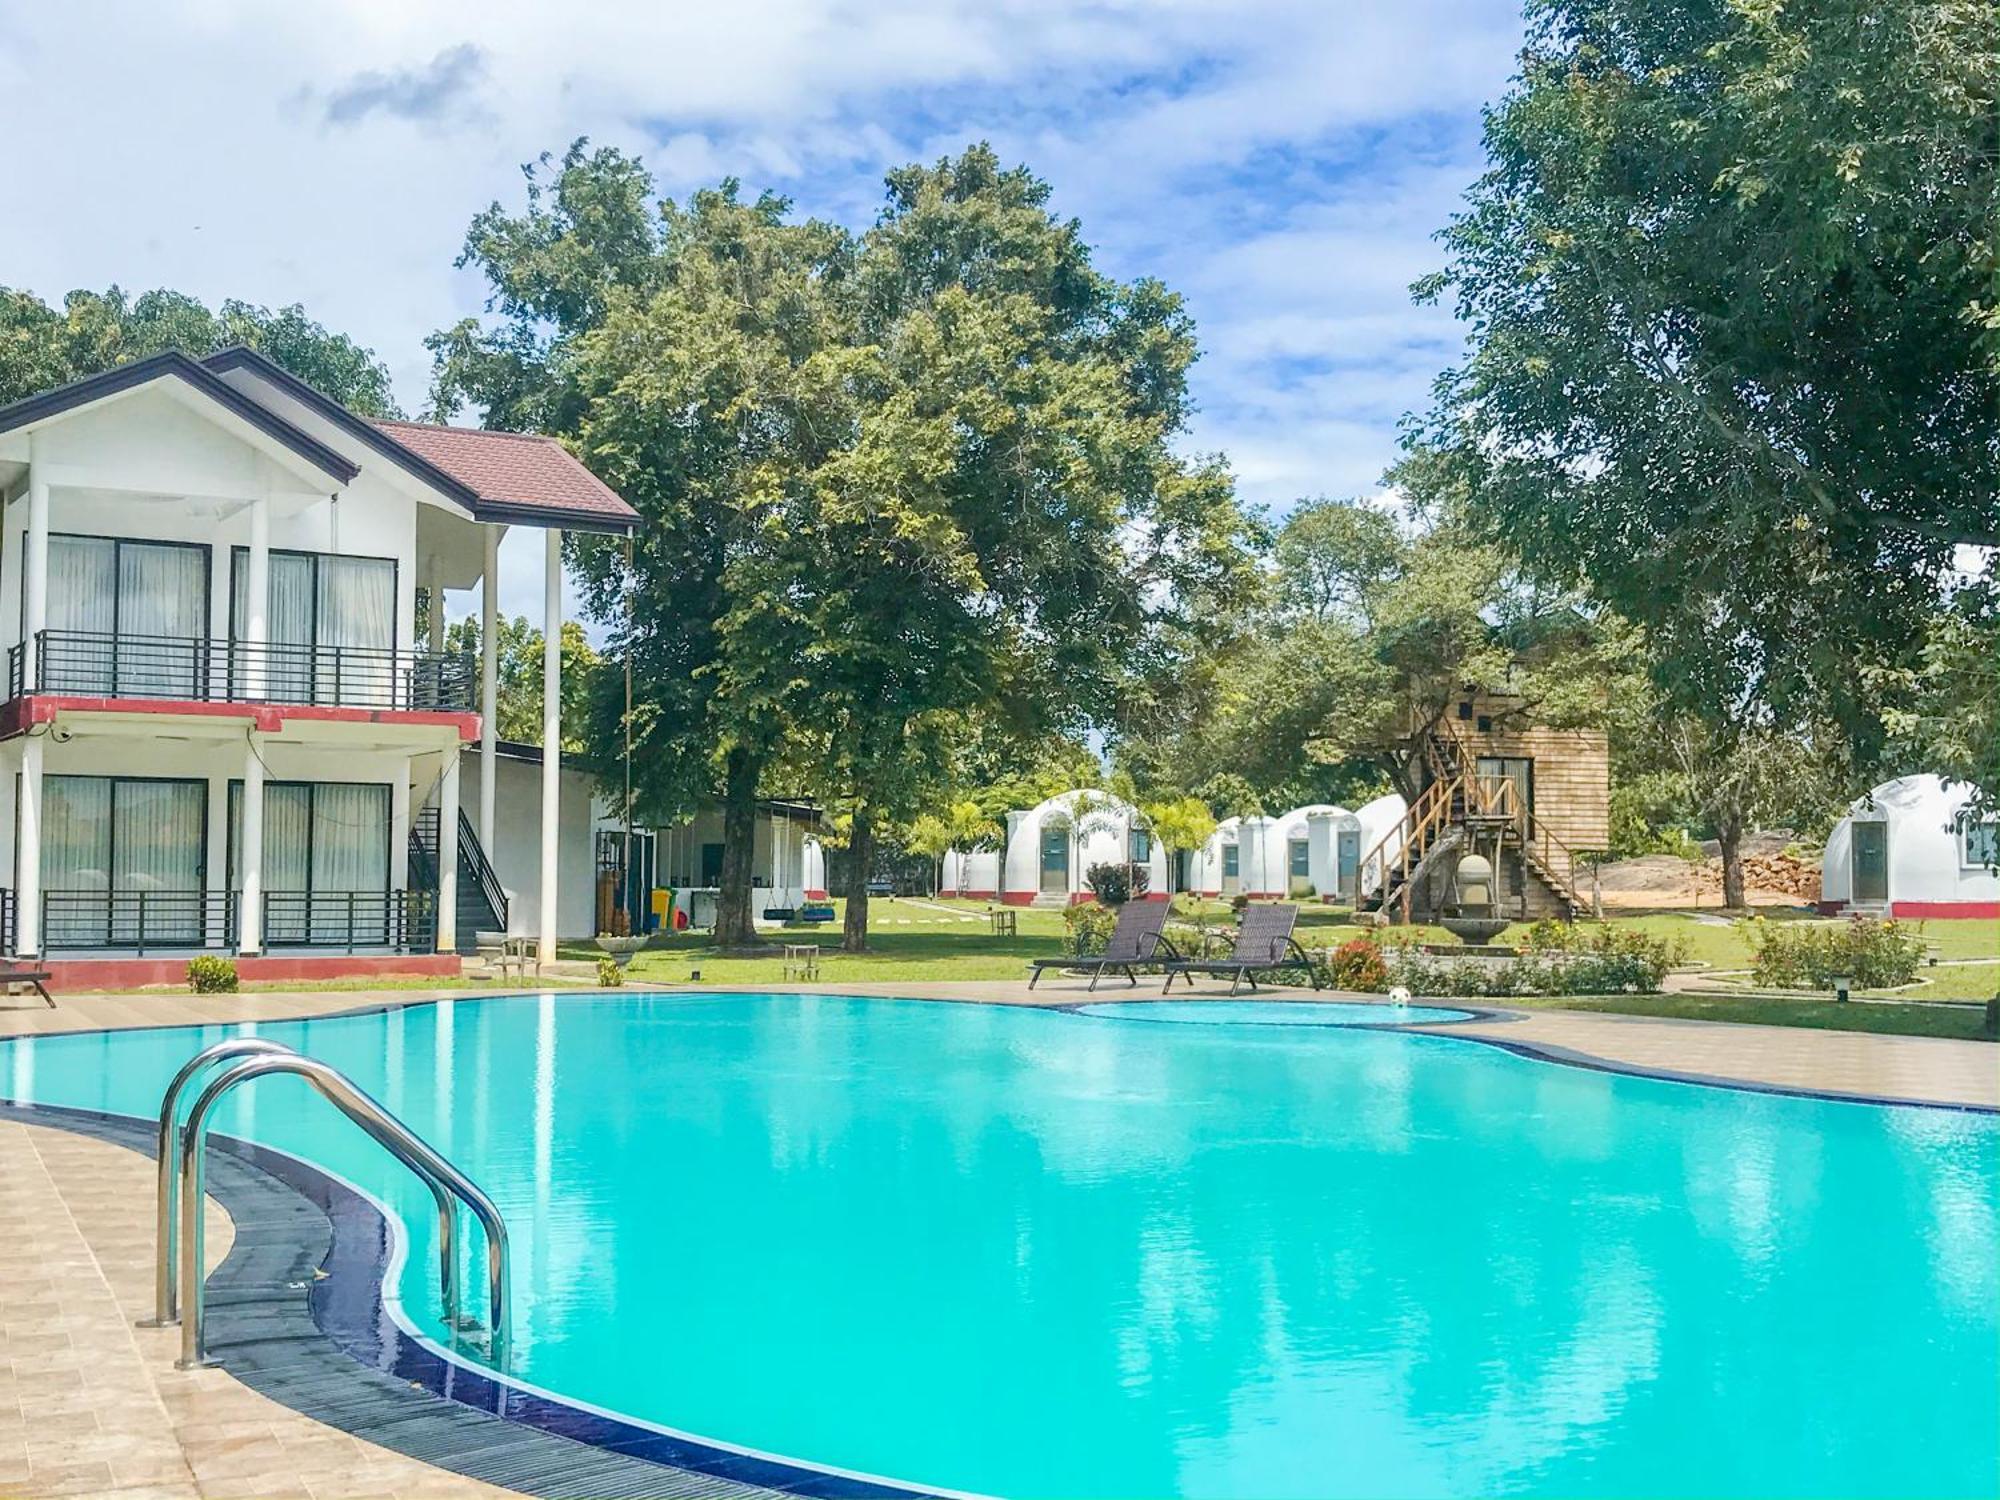 Hotel The Lion Kingdom Sigirija Zewnętrze zdjęcie